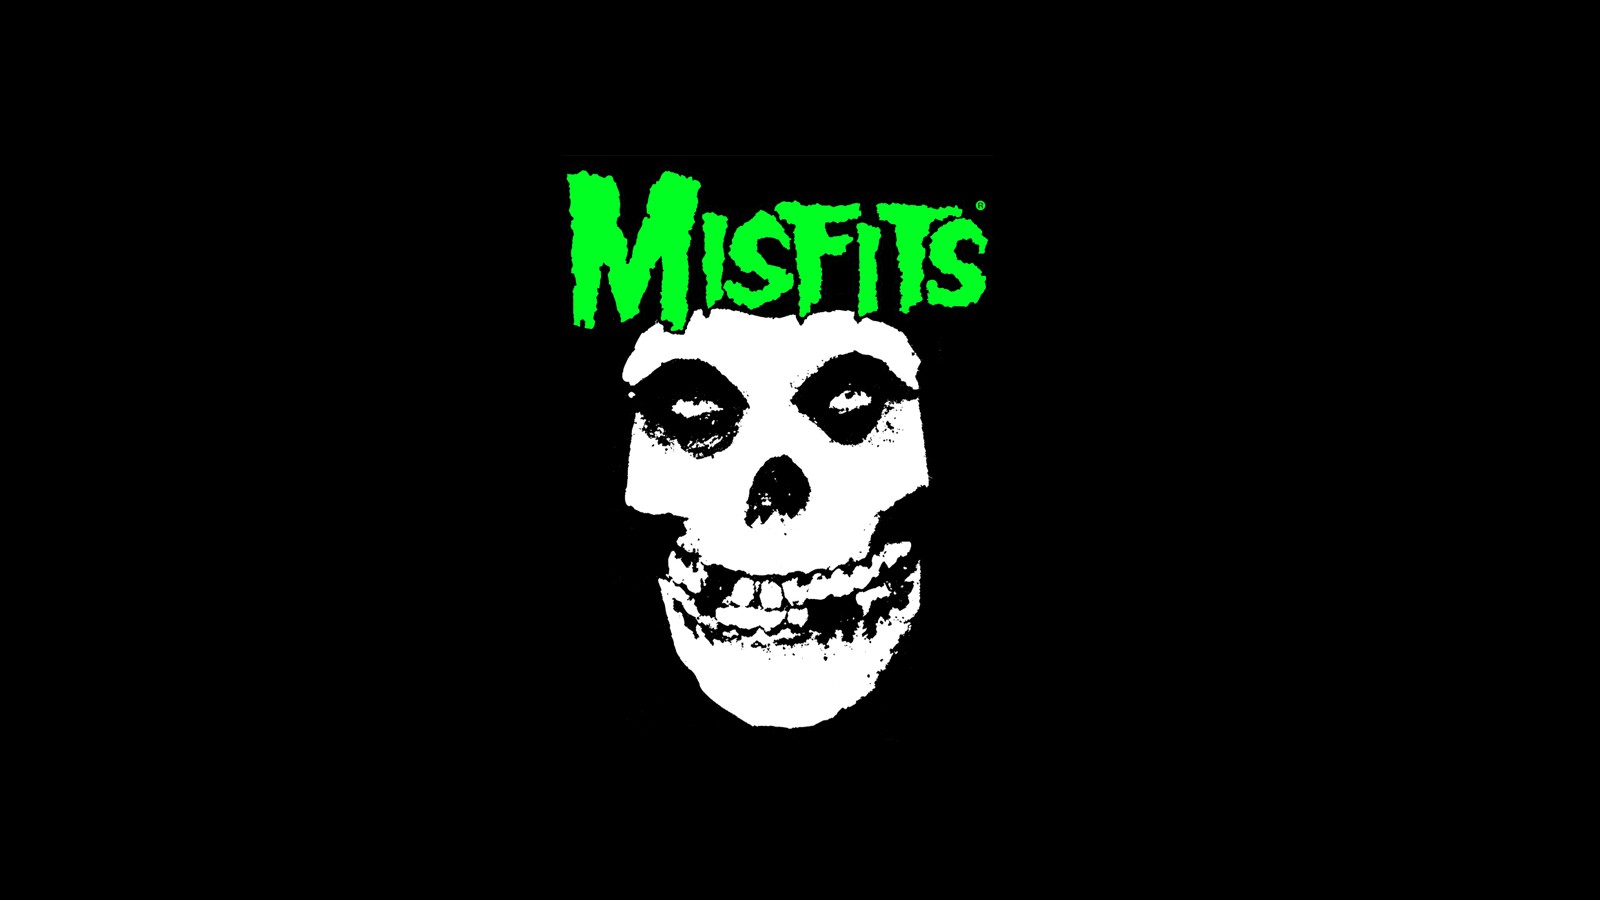 Misfits Band Logo Band Mascot Green Skull 1600x900